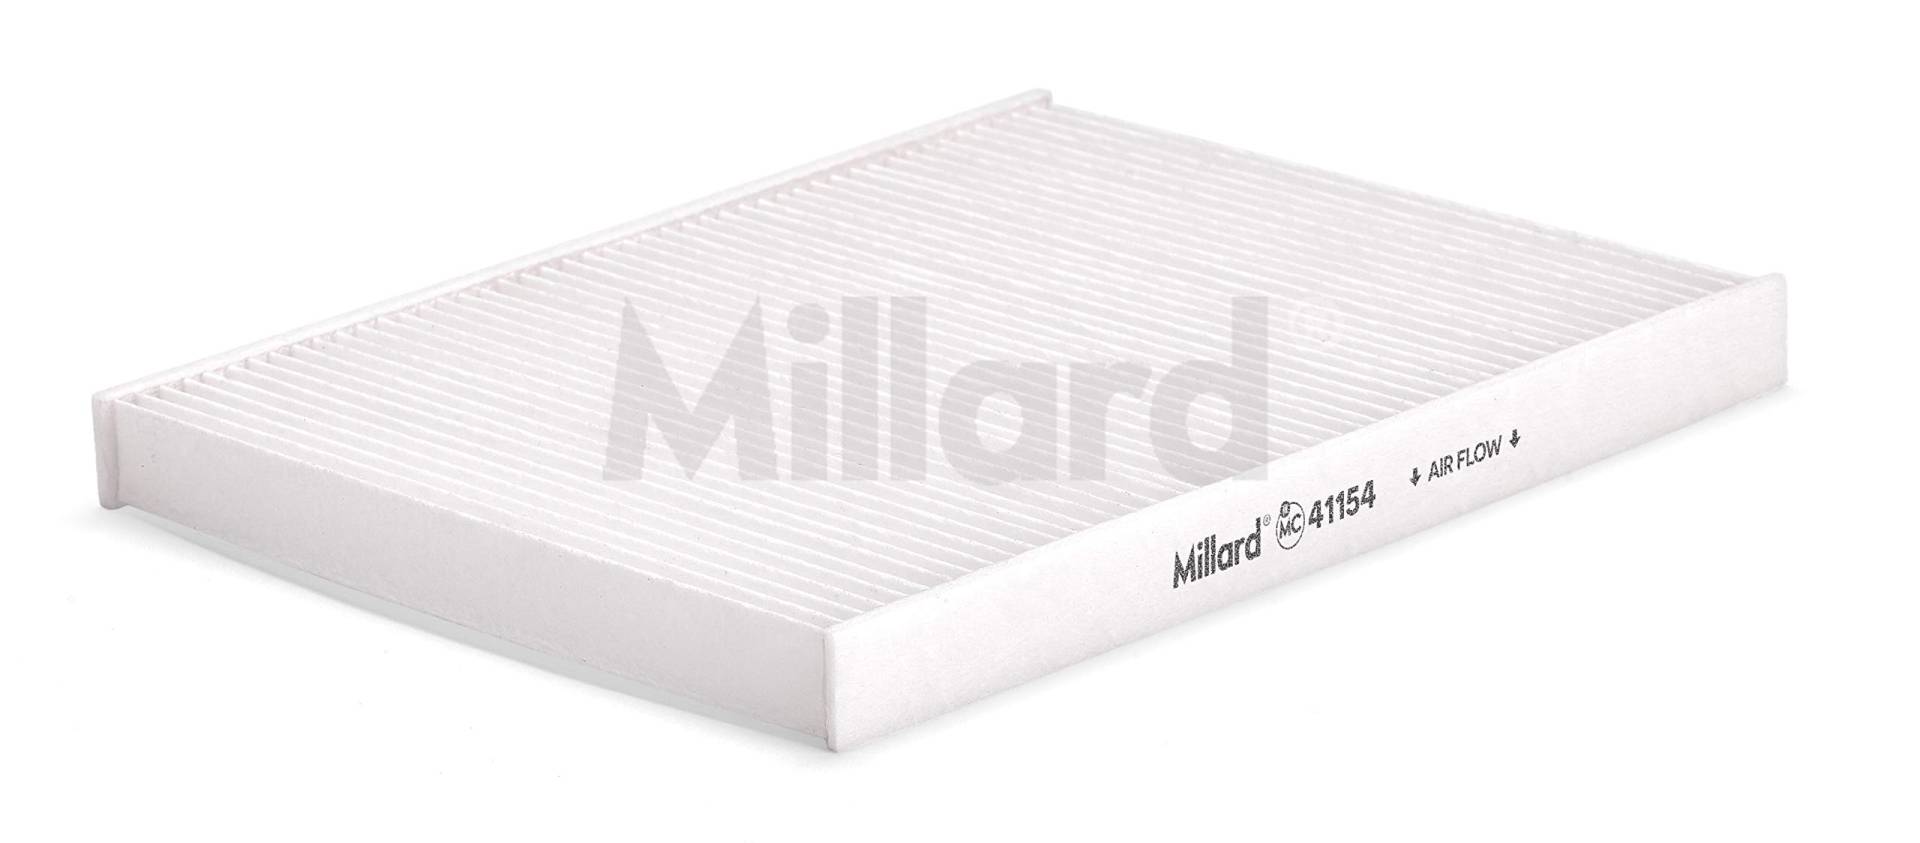 Millard Filters Original Millard Auto Innenraumfilter, 1 Stück. 24 x 18.8 x 2.2 cm von Millard Filters